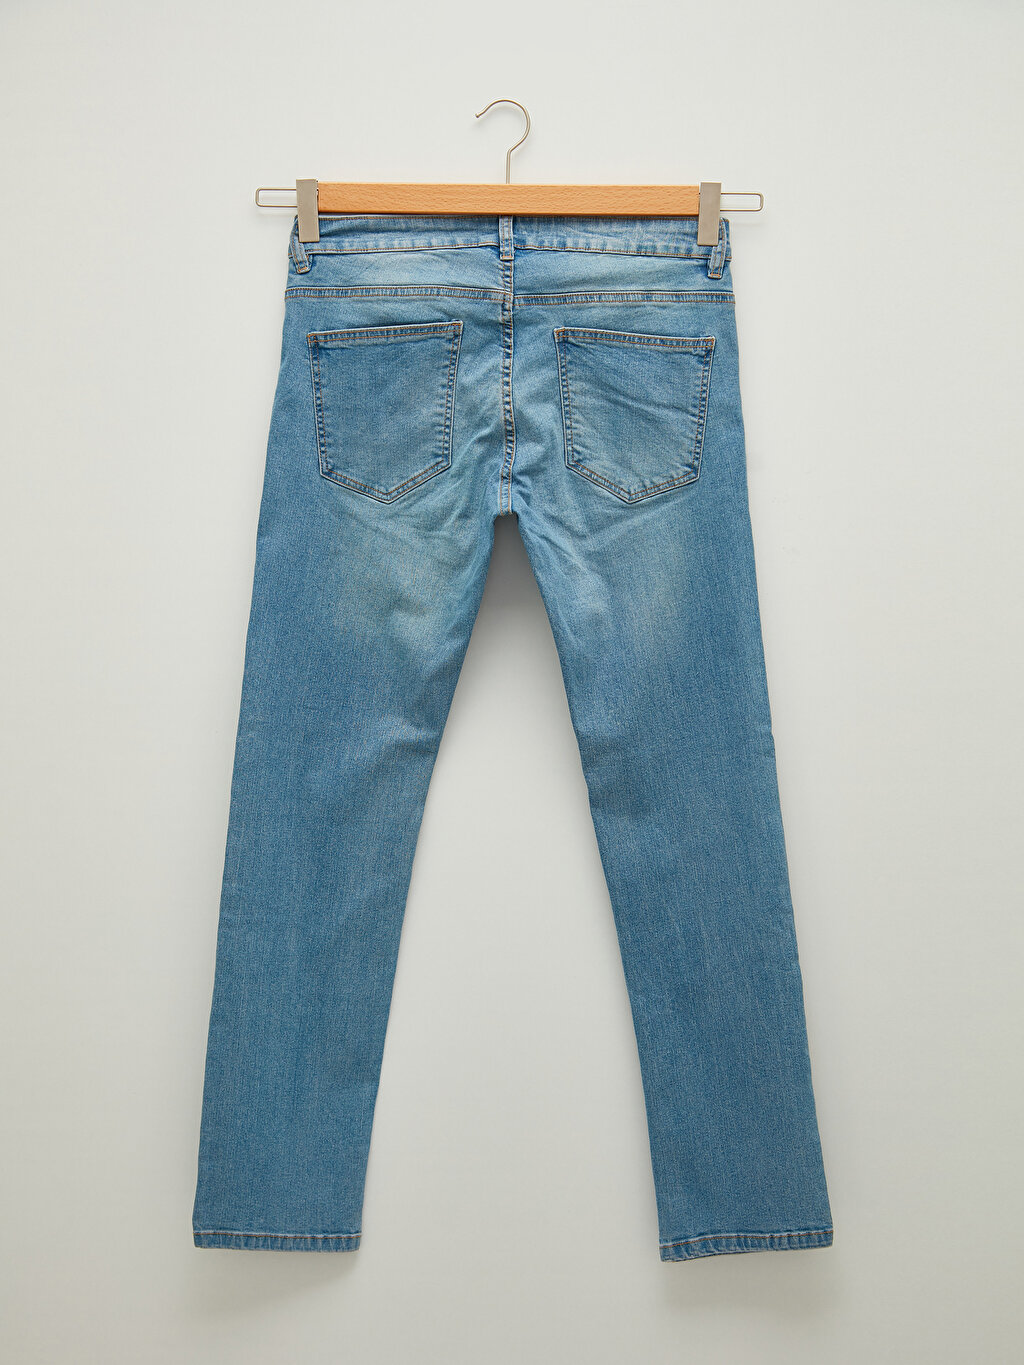 750 Slim Fit Men's Jeans -W15638Z8-311 - W15638Z8-311 - LC Waikiki